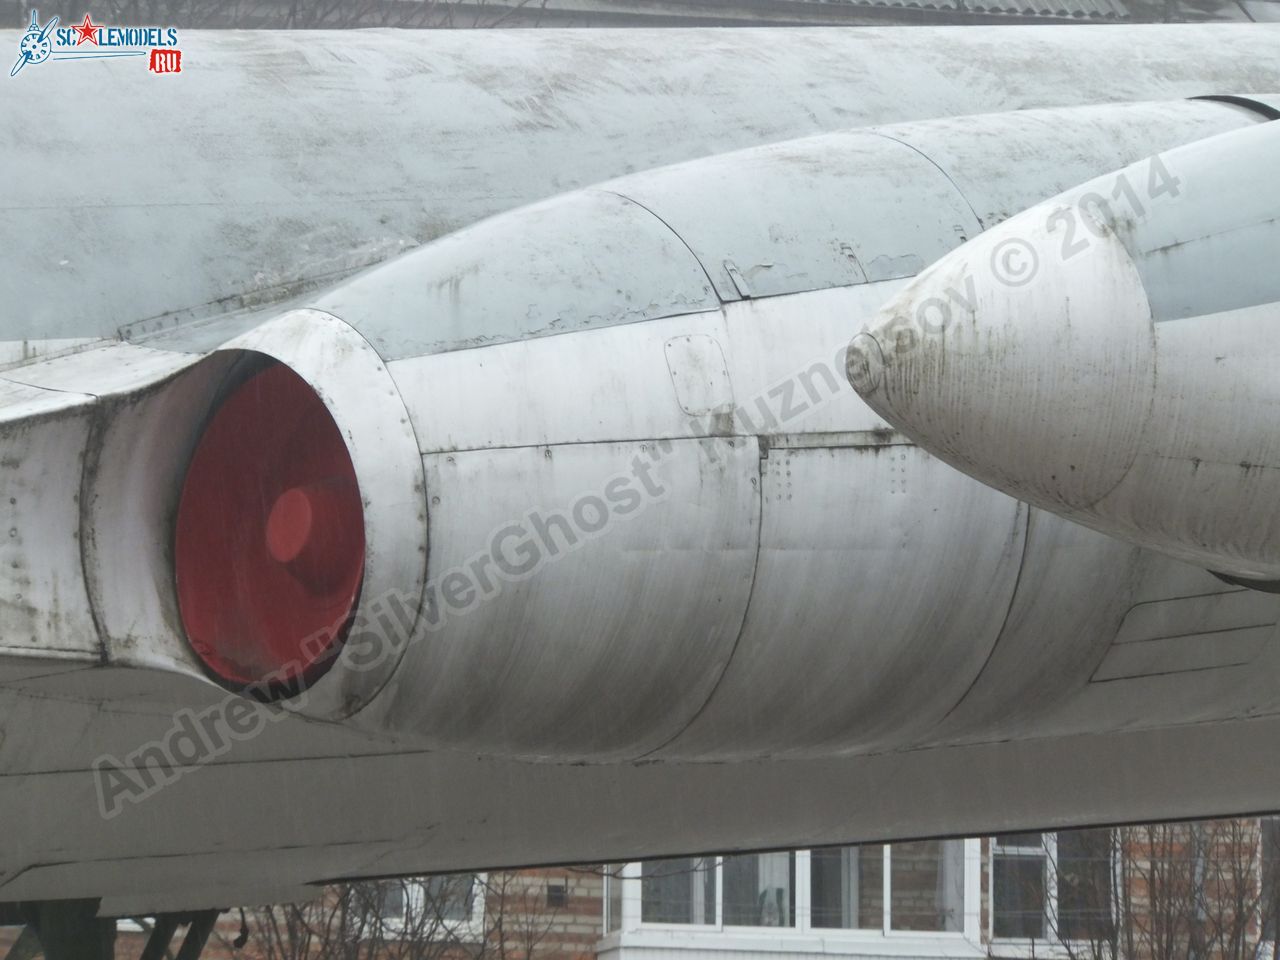 Tu-16_Badger_Smolensk_0344.jpg